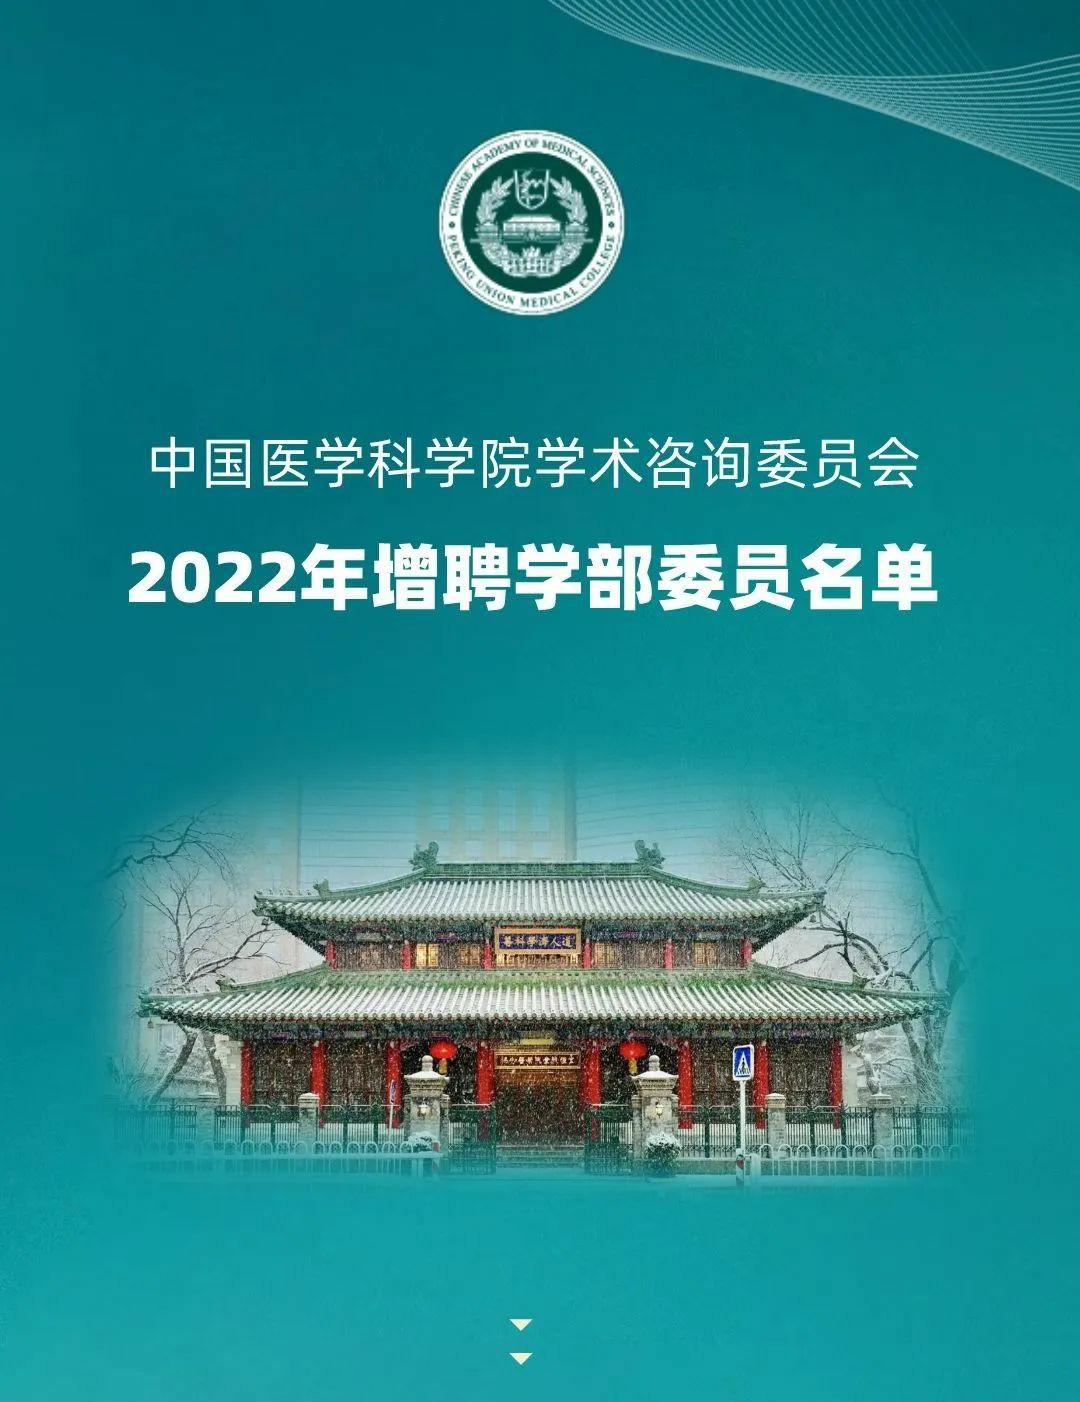 2022年度中国<font color="red">医学科学</font>院学术咨询委员会增聘<font color="red">学部</font>委员<font color="red">名单</font>发布